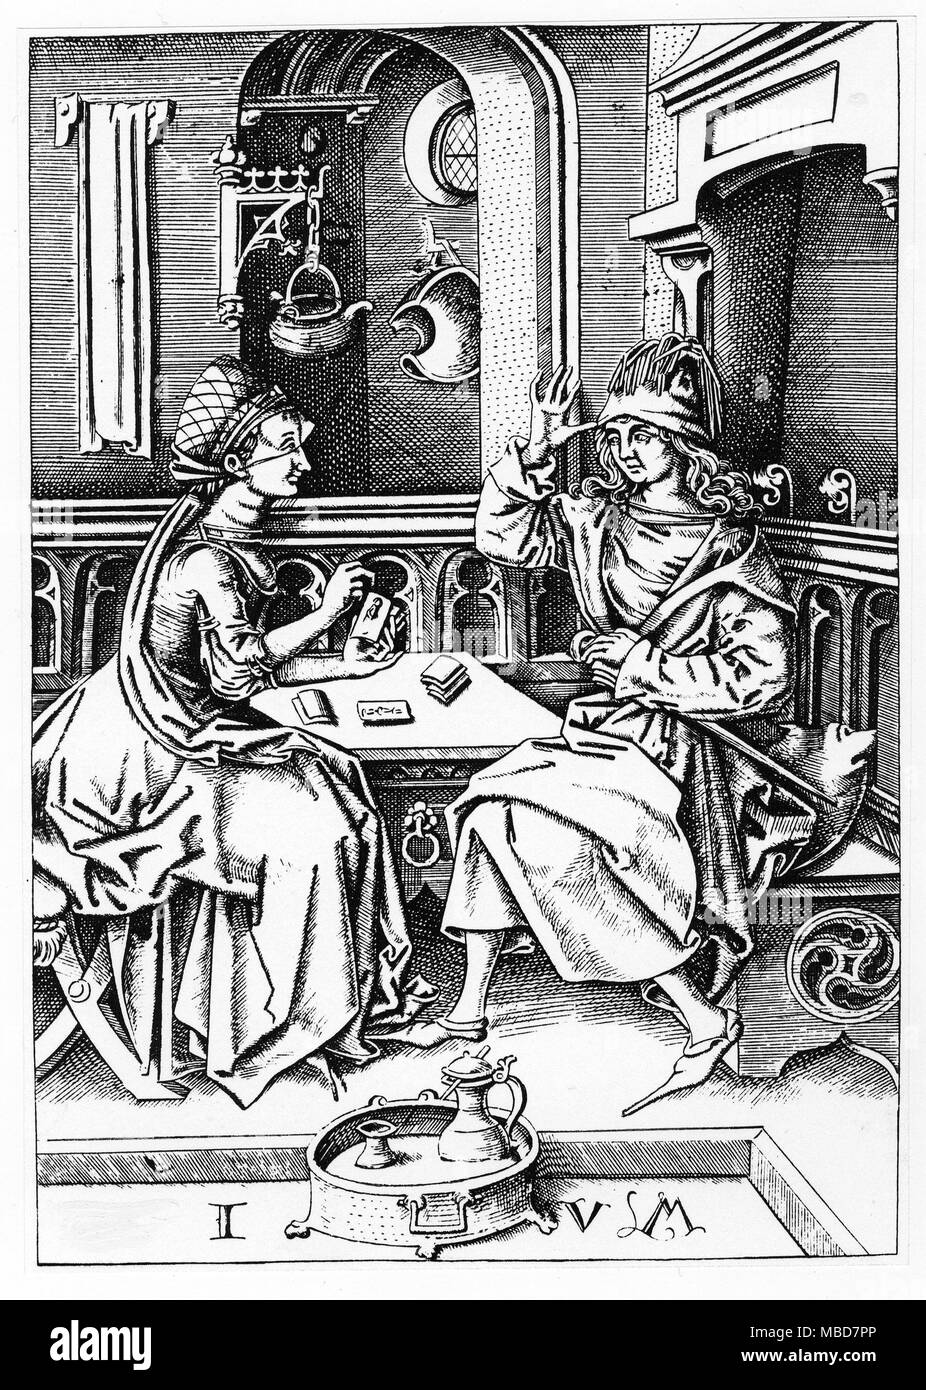 TAROT - CARTOMANCY - naipes grabado atribuido a Israel van Mecken (finales del siglo XV), que retrata a un hombre y una mujer jugando a las cartas, o quizás consultando el Tarot. Reproducido por Samuel Weller Cantante, investiga en la historia de los naipes, 1816. Foto de stock